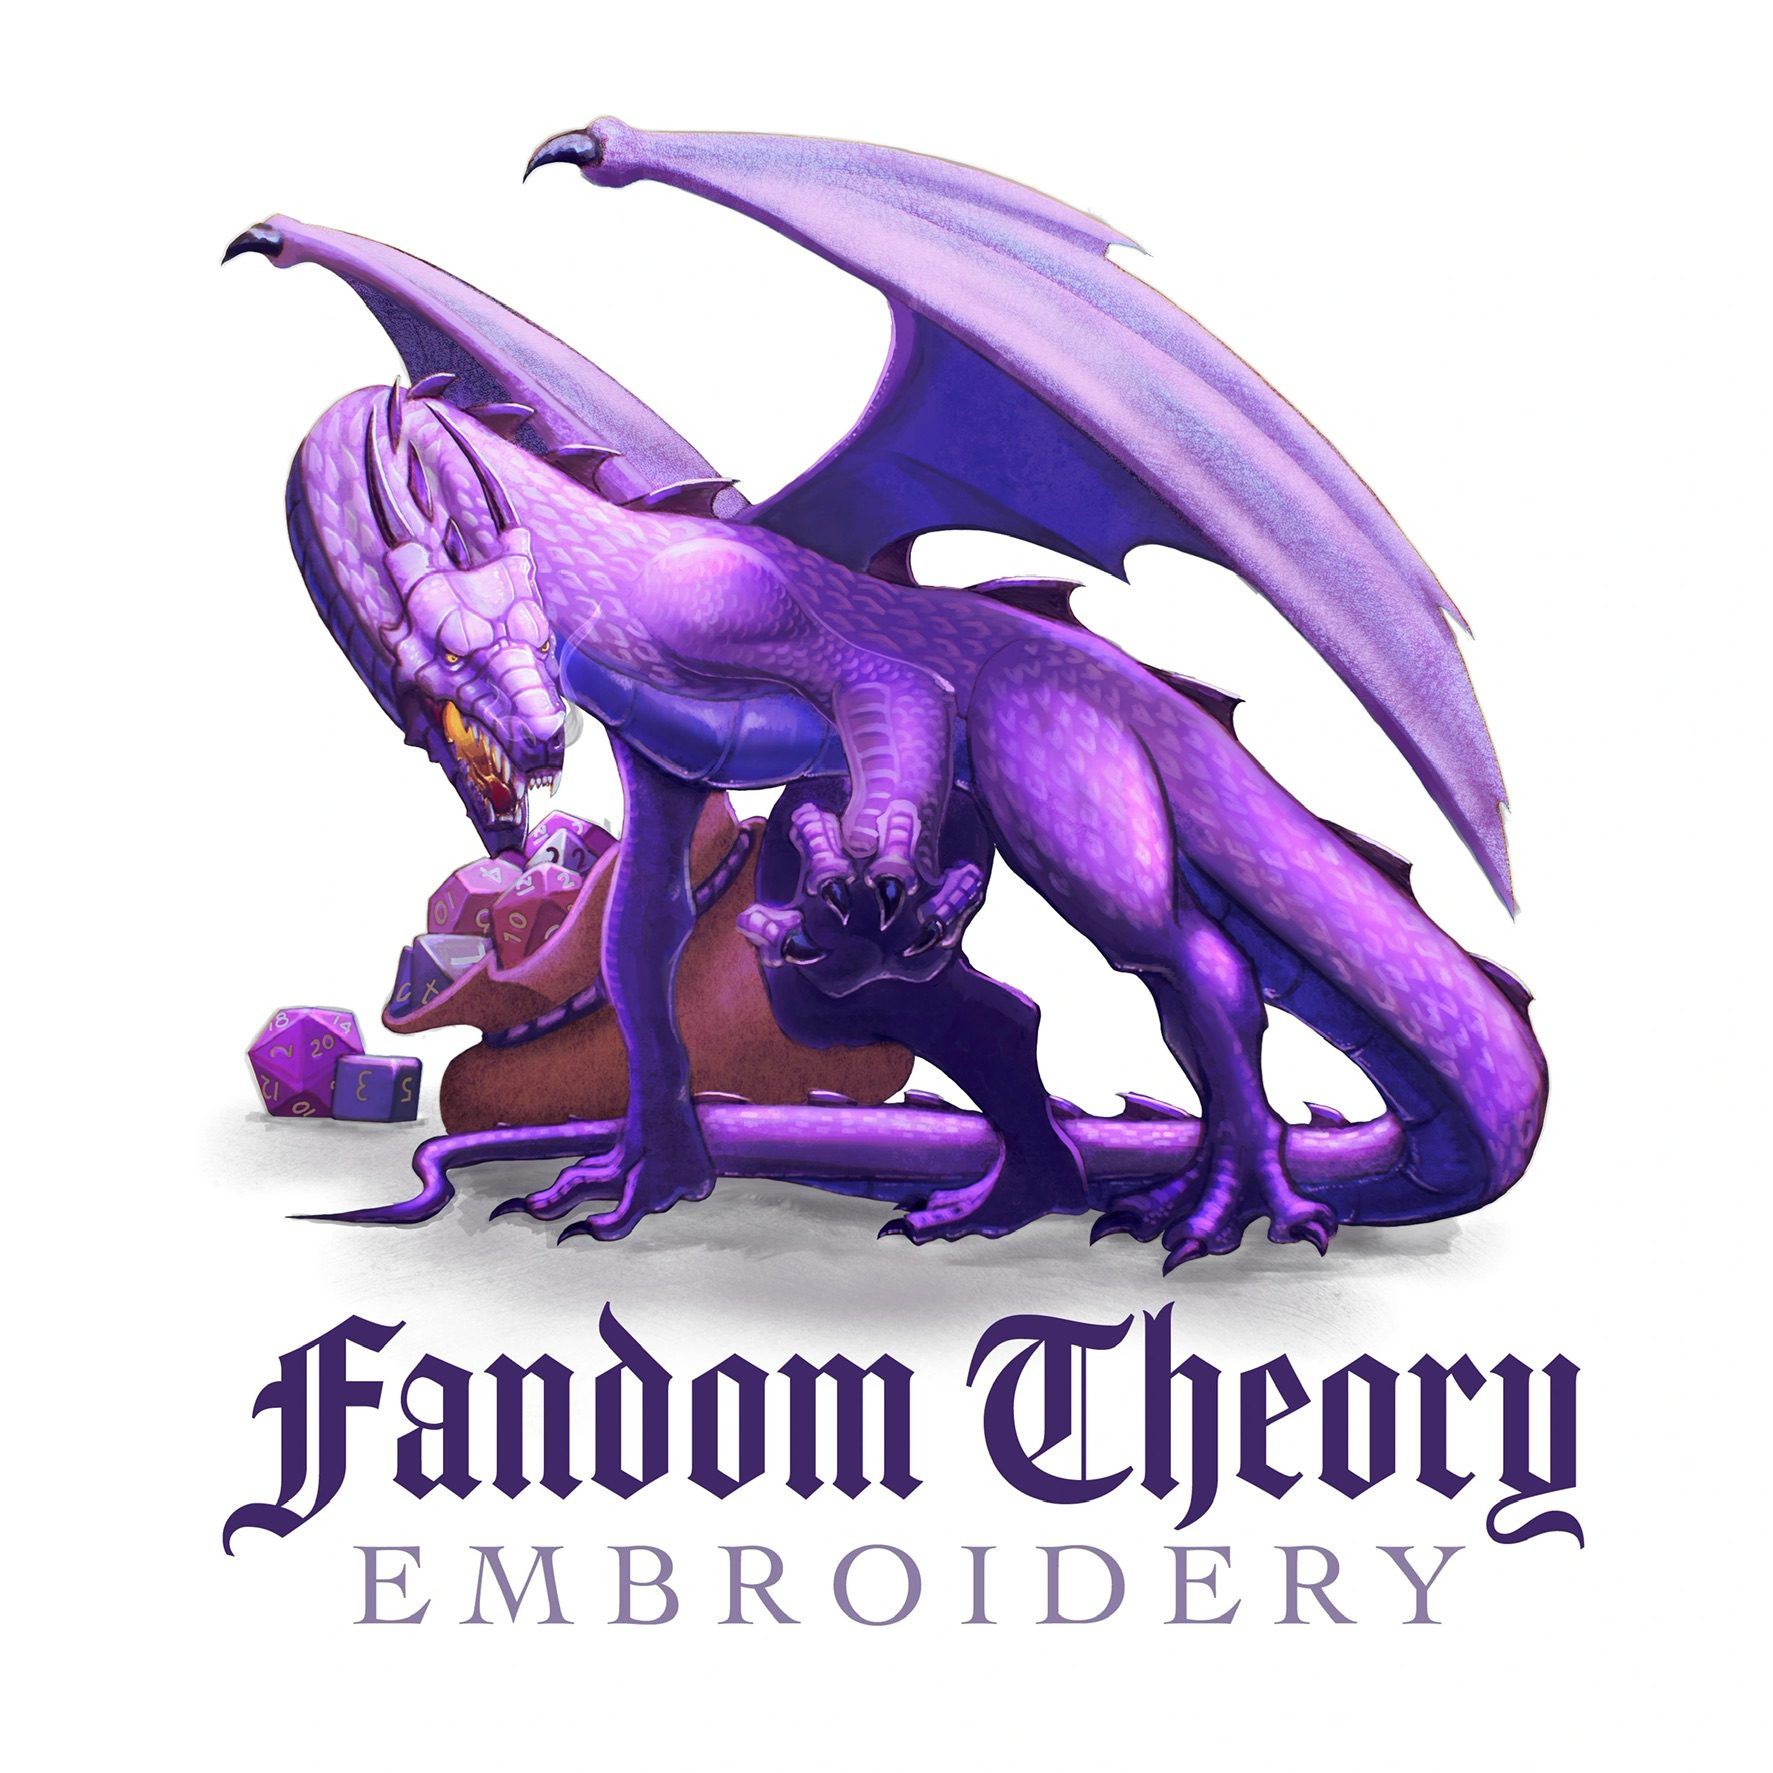 Fandom Theory Embroidery